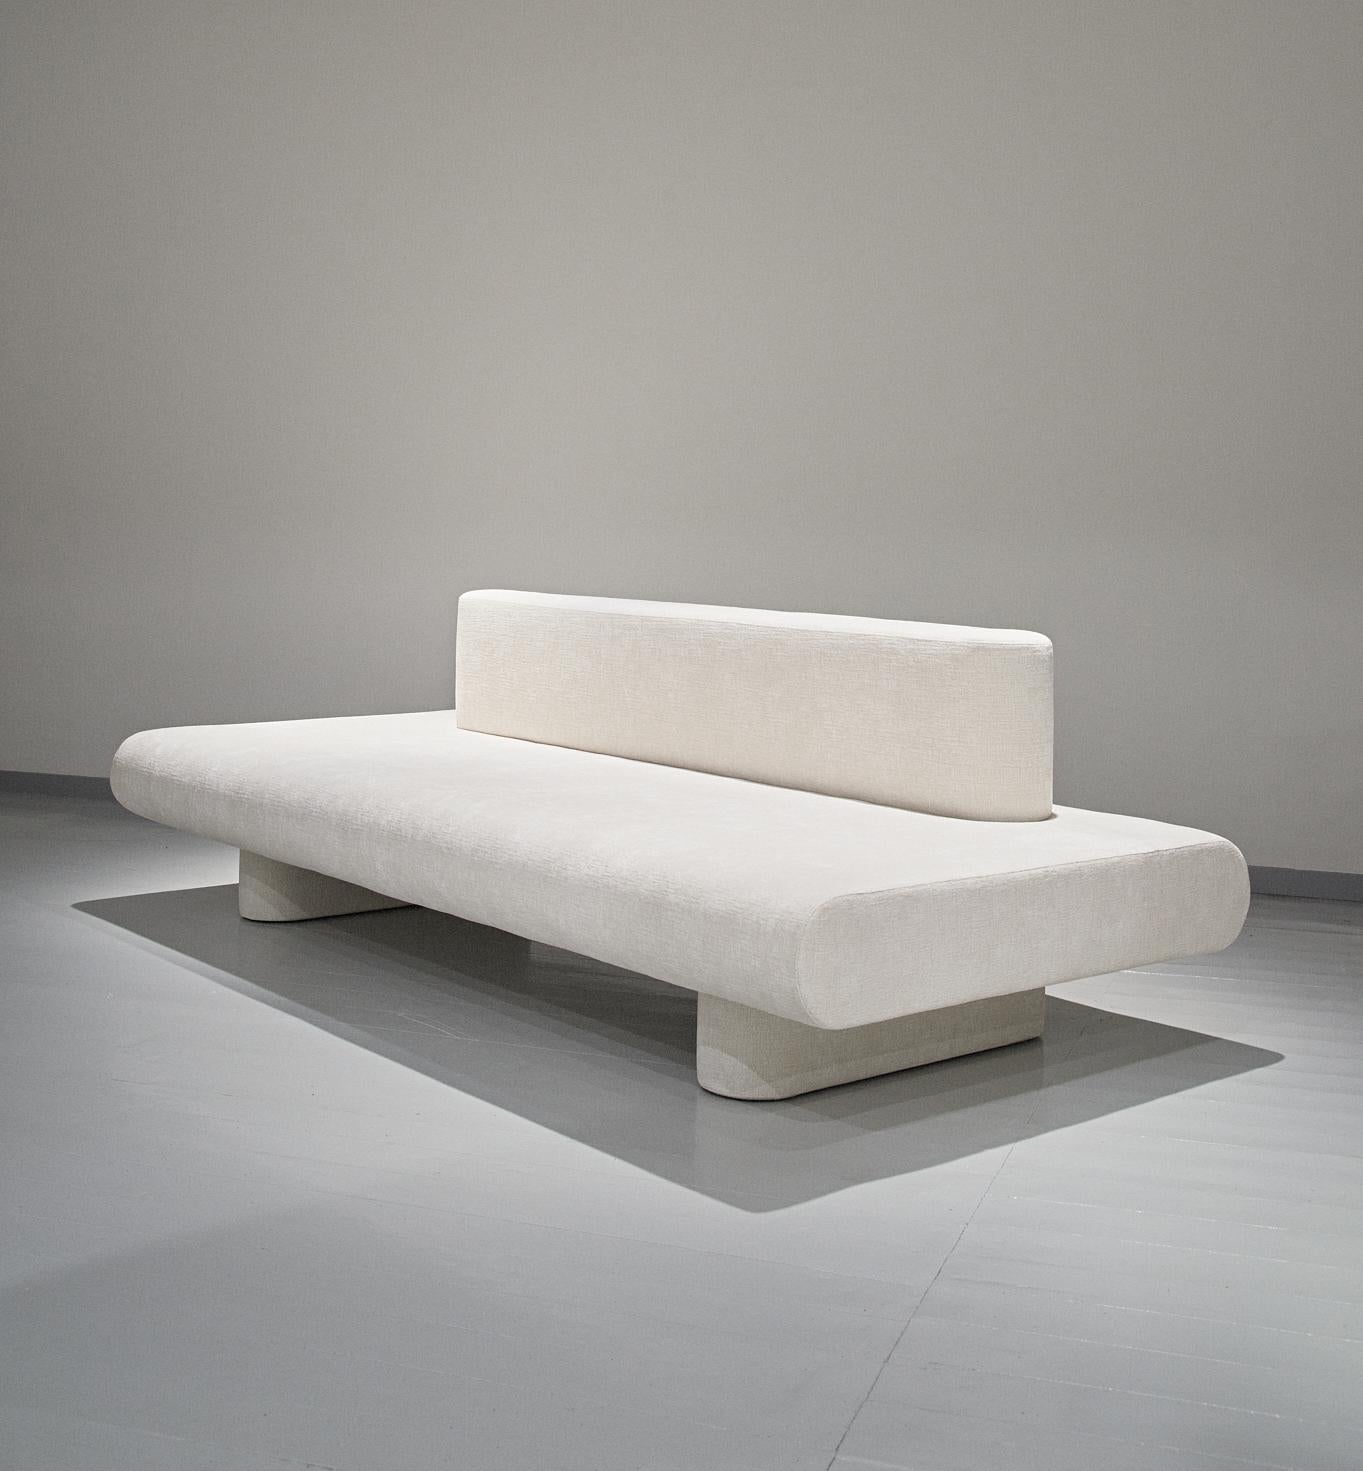 La nueva colección modular Flowers de Olga Engel se compone de un sofá y sillas modulares. Las sillas pueden conectarse entre sí de forma múltiple. Flores es una alusión a la sencilla composición de flores de campo blancas. Un sofá blando con una